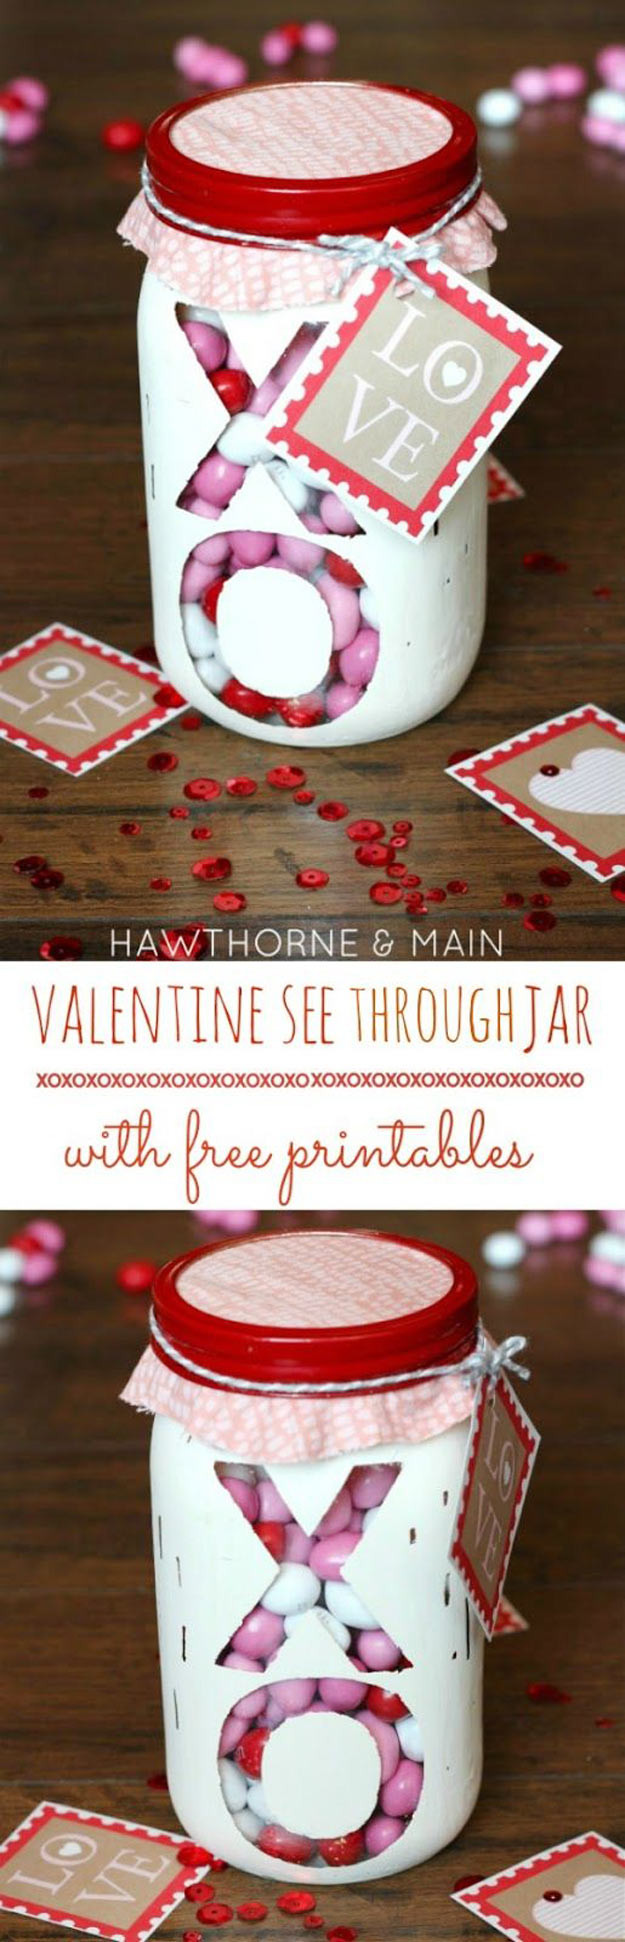 Best ideas about Mason Jar Valentine Gift Ideas
. Save or Pin 54 Mason Jar Valentine Gifts and Crafts Now.